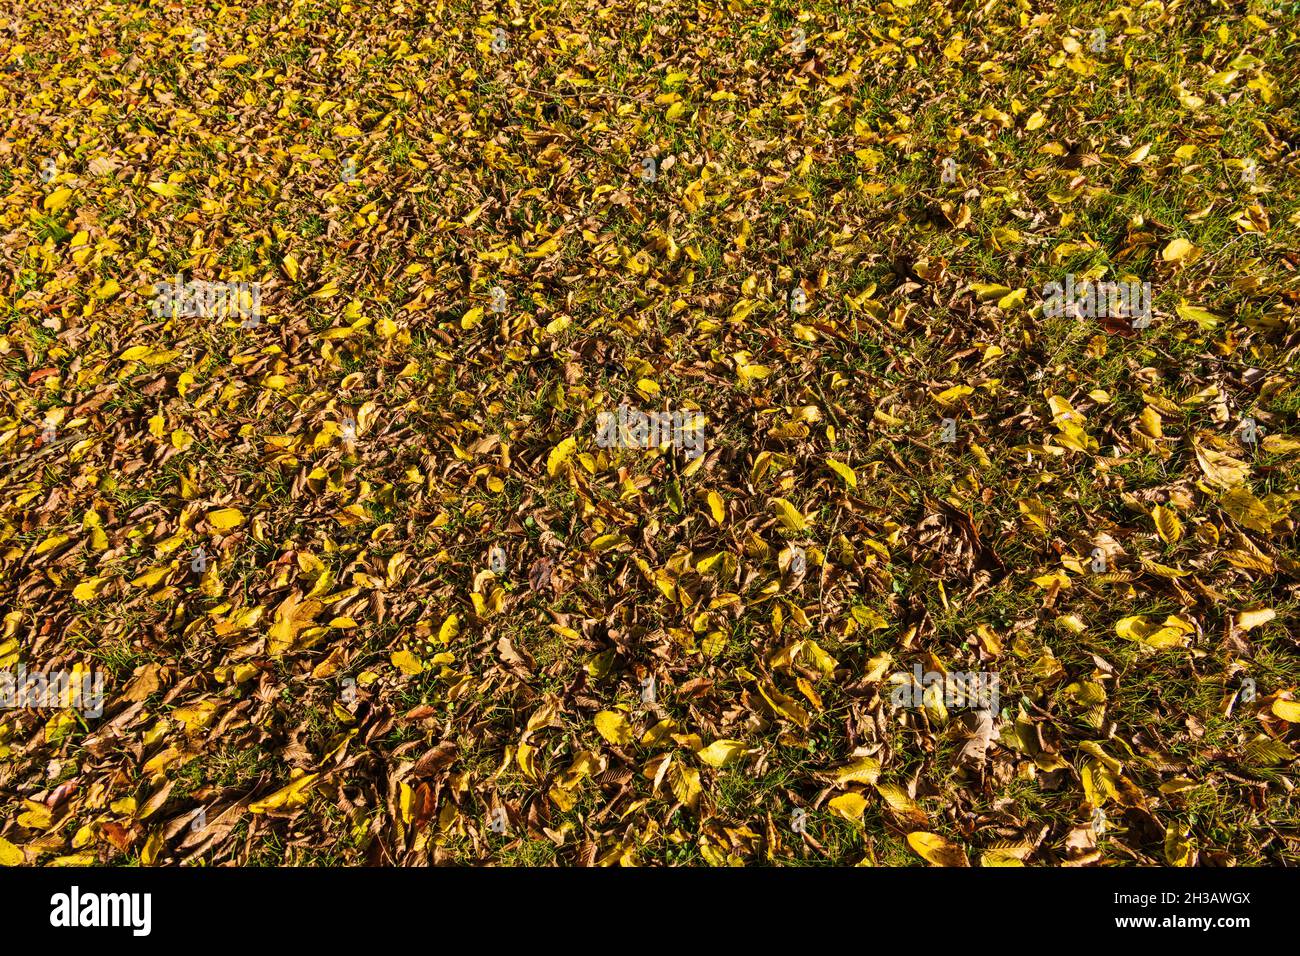 Waldboden mit Laub in herbstlichen Farben als Hintergrundtextur Stock Photo